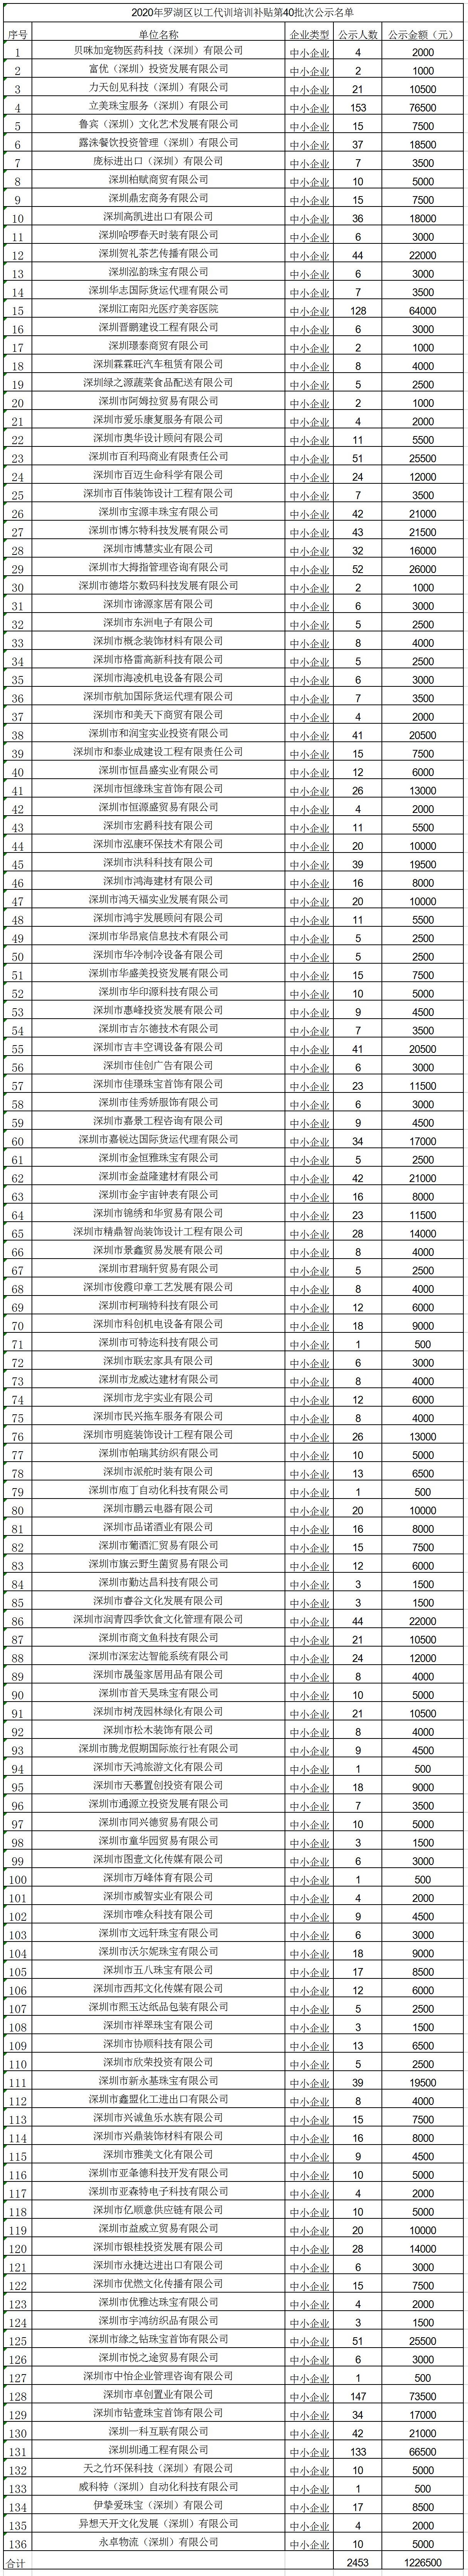 2020年深圳市罗湖区以工代训培训补贴第40批次公示名单.jpg